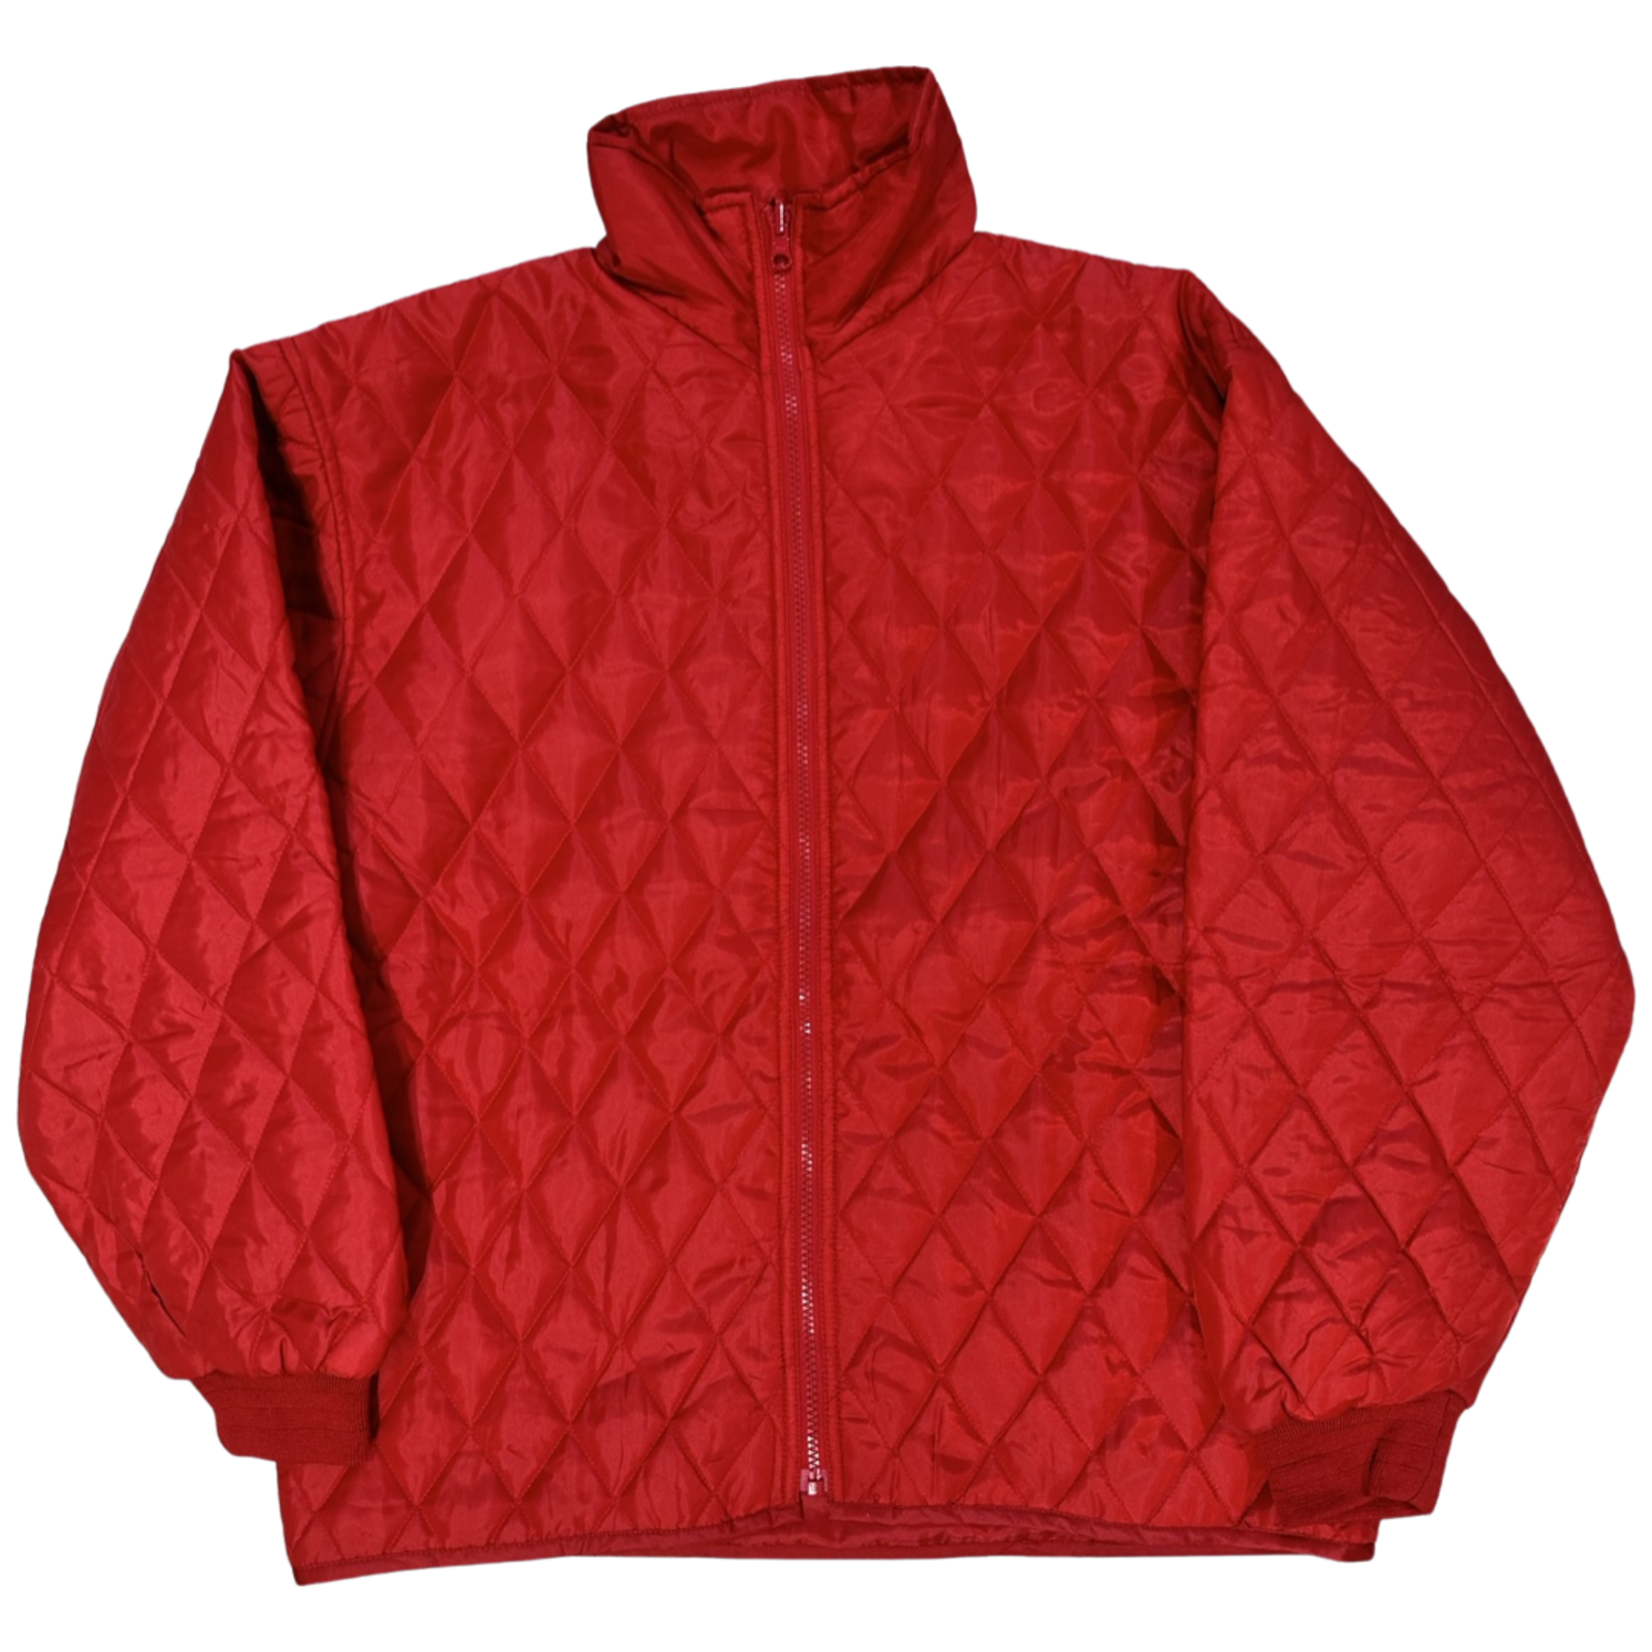 Vintage Vintage gewatteerde jas rood size M